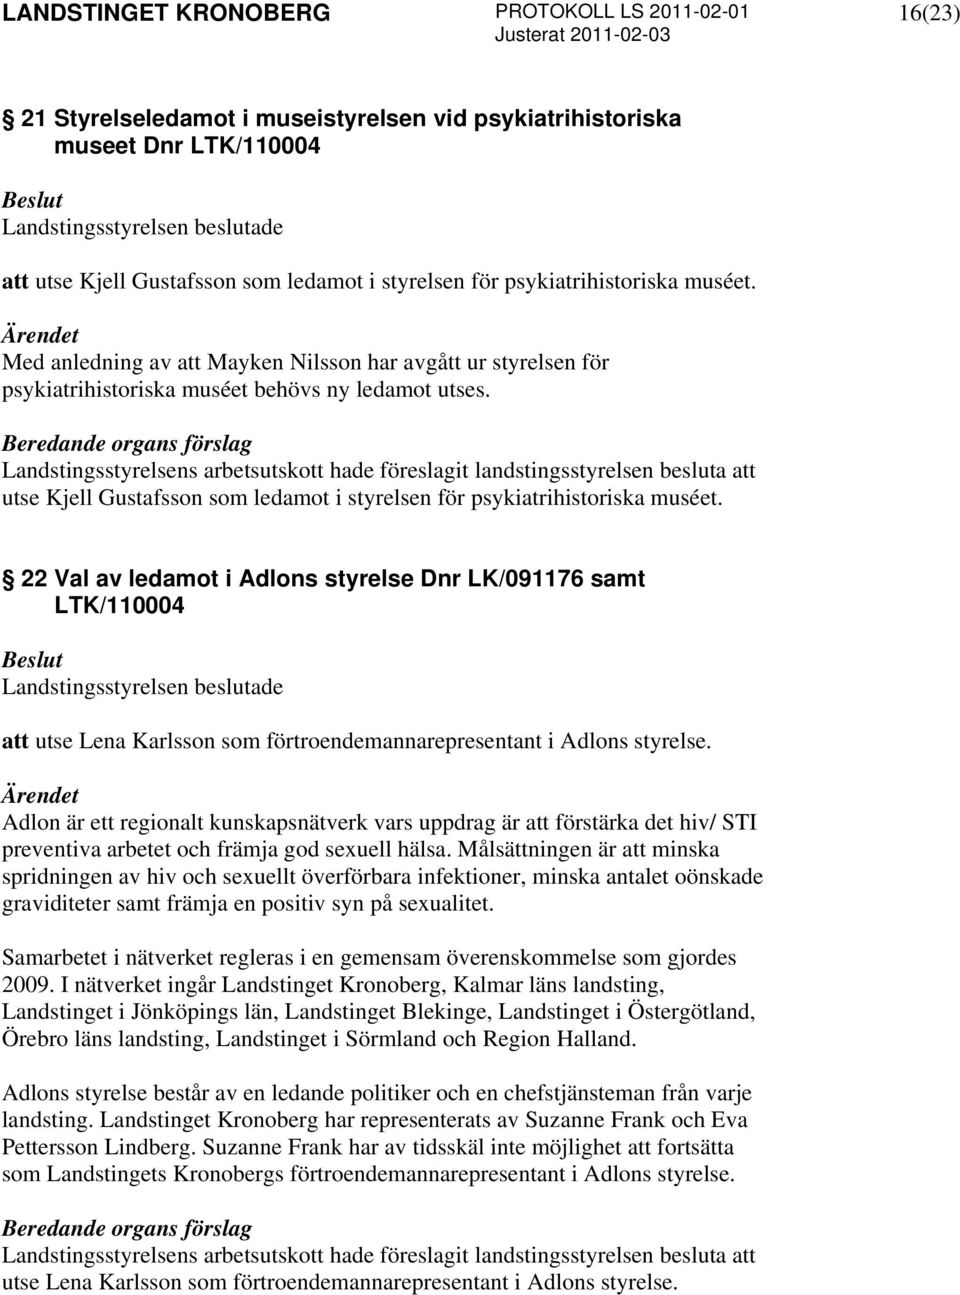 22 Val av ledamot i Adlons styrelse Dnr LK/091176 samt LTK/110004 att utse Lena Karlsson som förtroendemannarepresentant i Adlons styrelse.